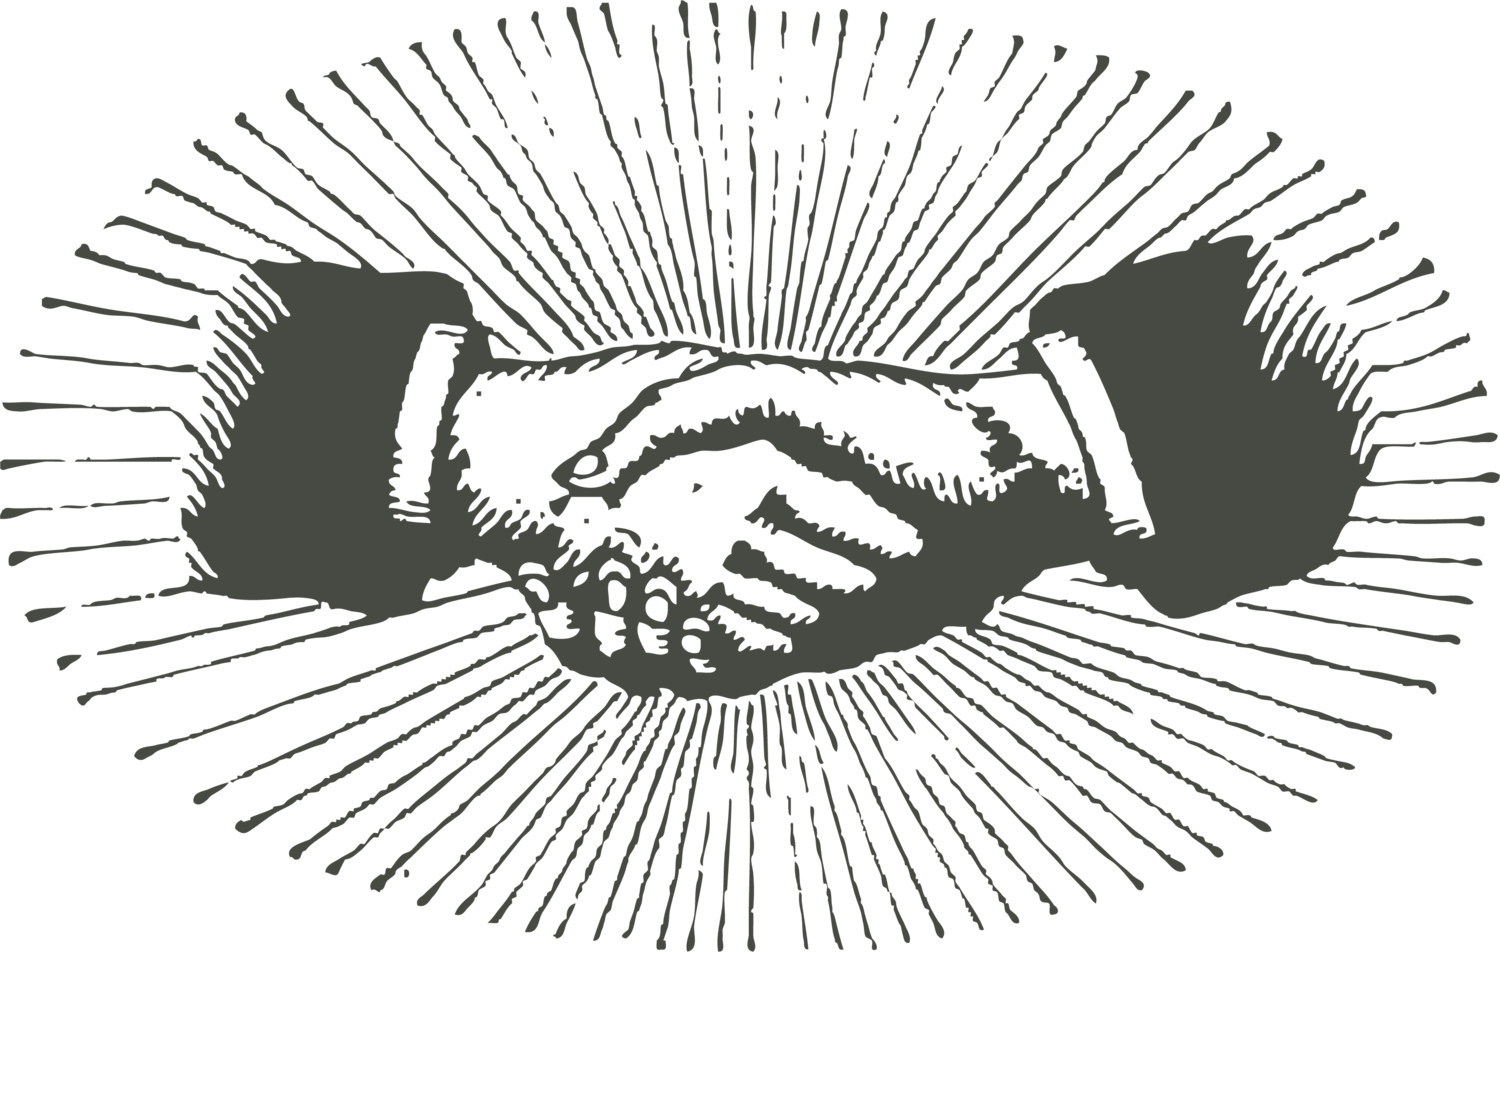 The Nicodemus Agency